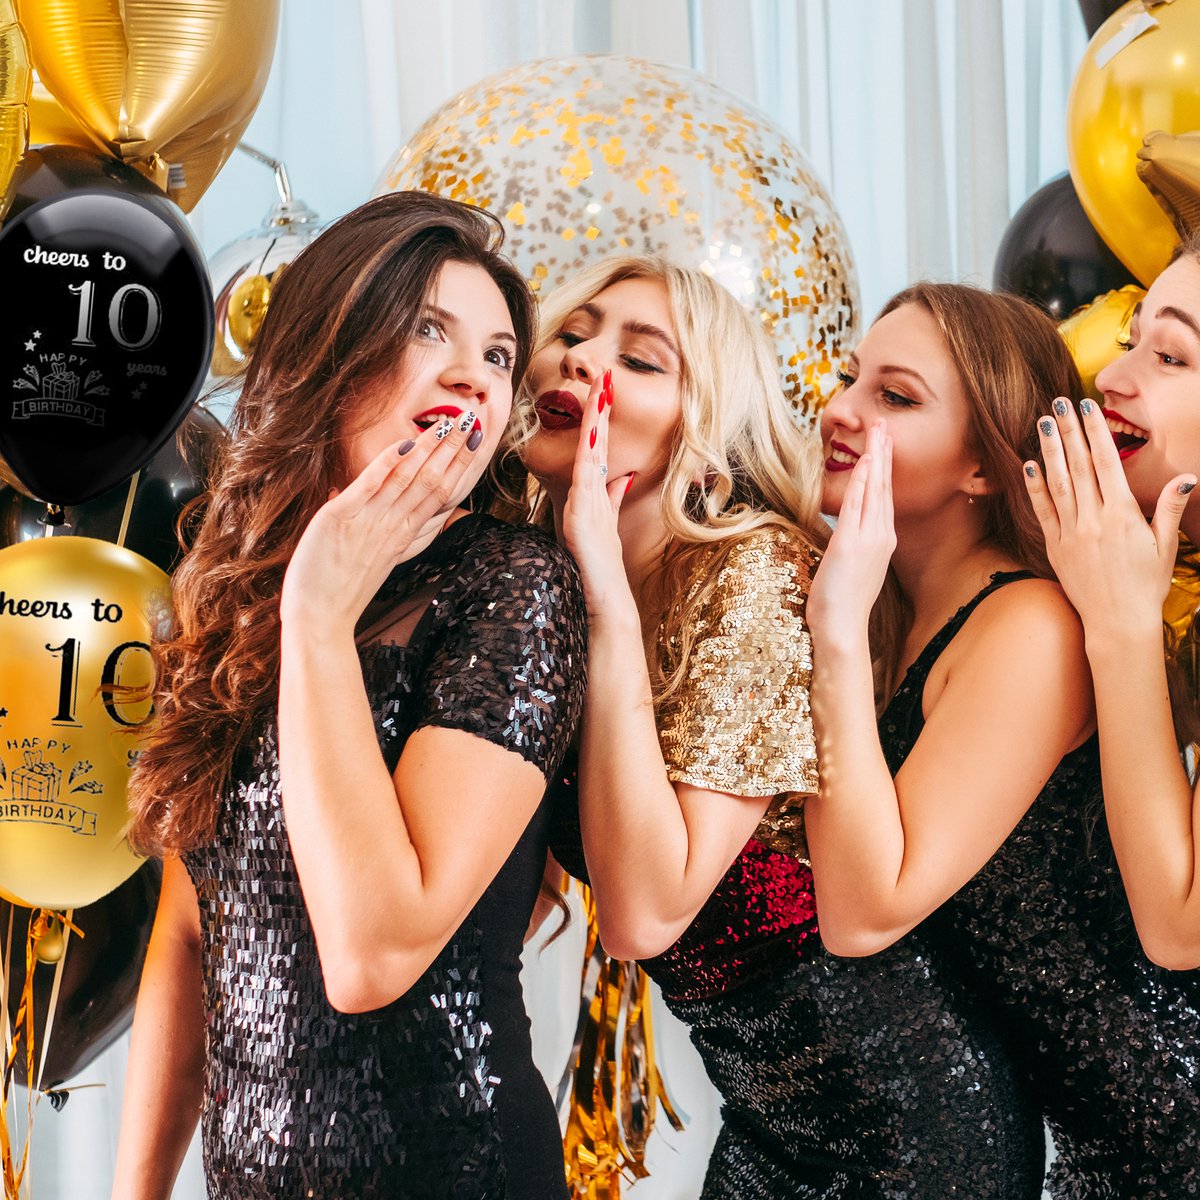 Celejoy® Pack de fête d'anniversaire 92 pièces Zwart et or pour 10 ans -  Ballons